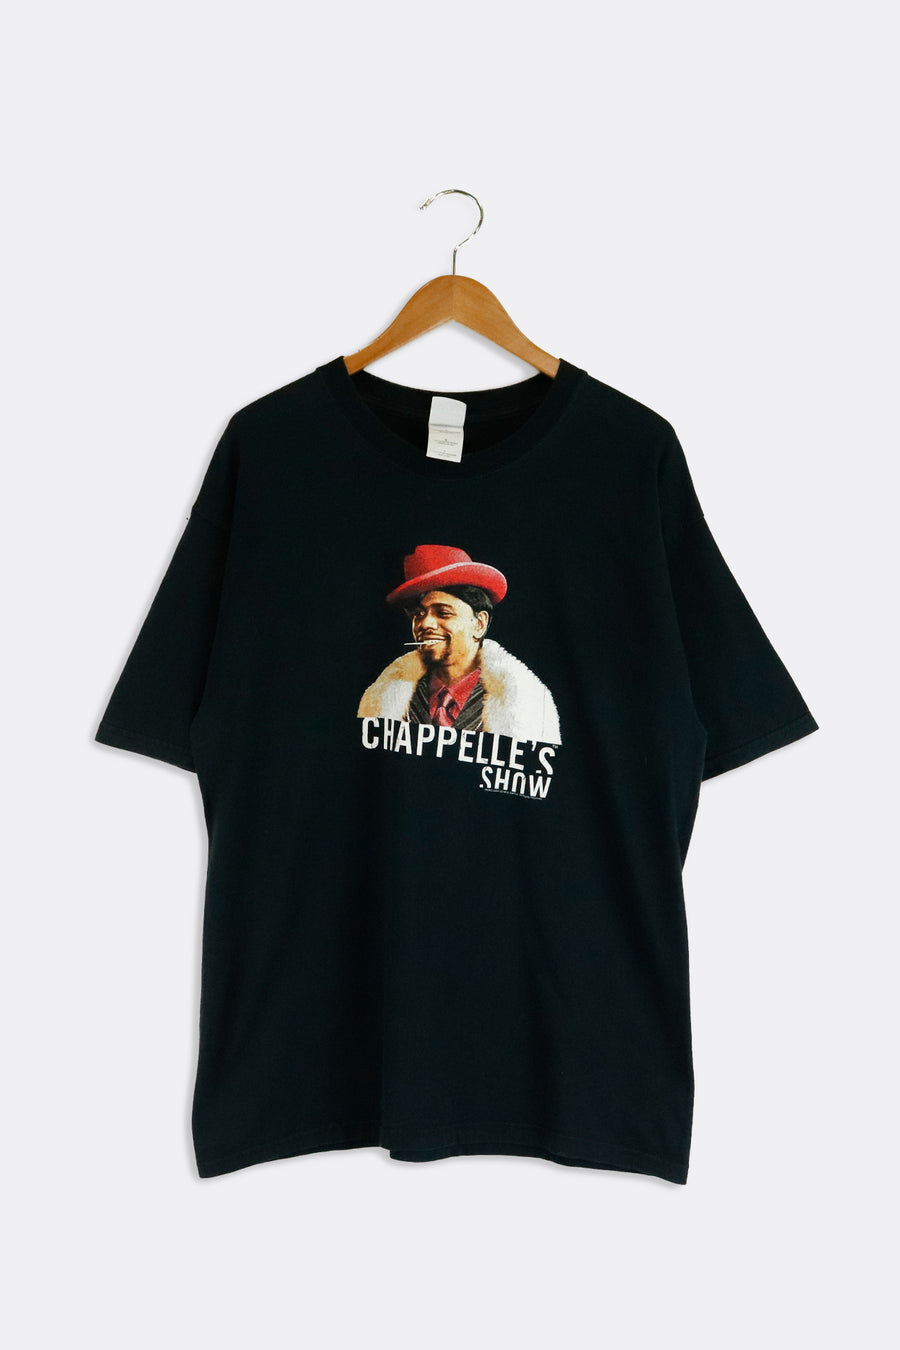 Vintage 2004 Dave Chappelle Comedy Central Graphic T Shirt Sz L